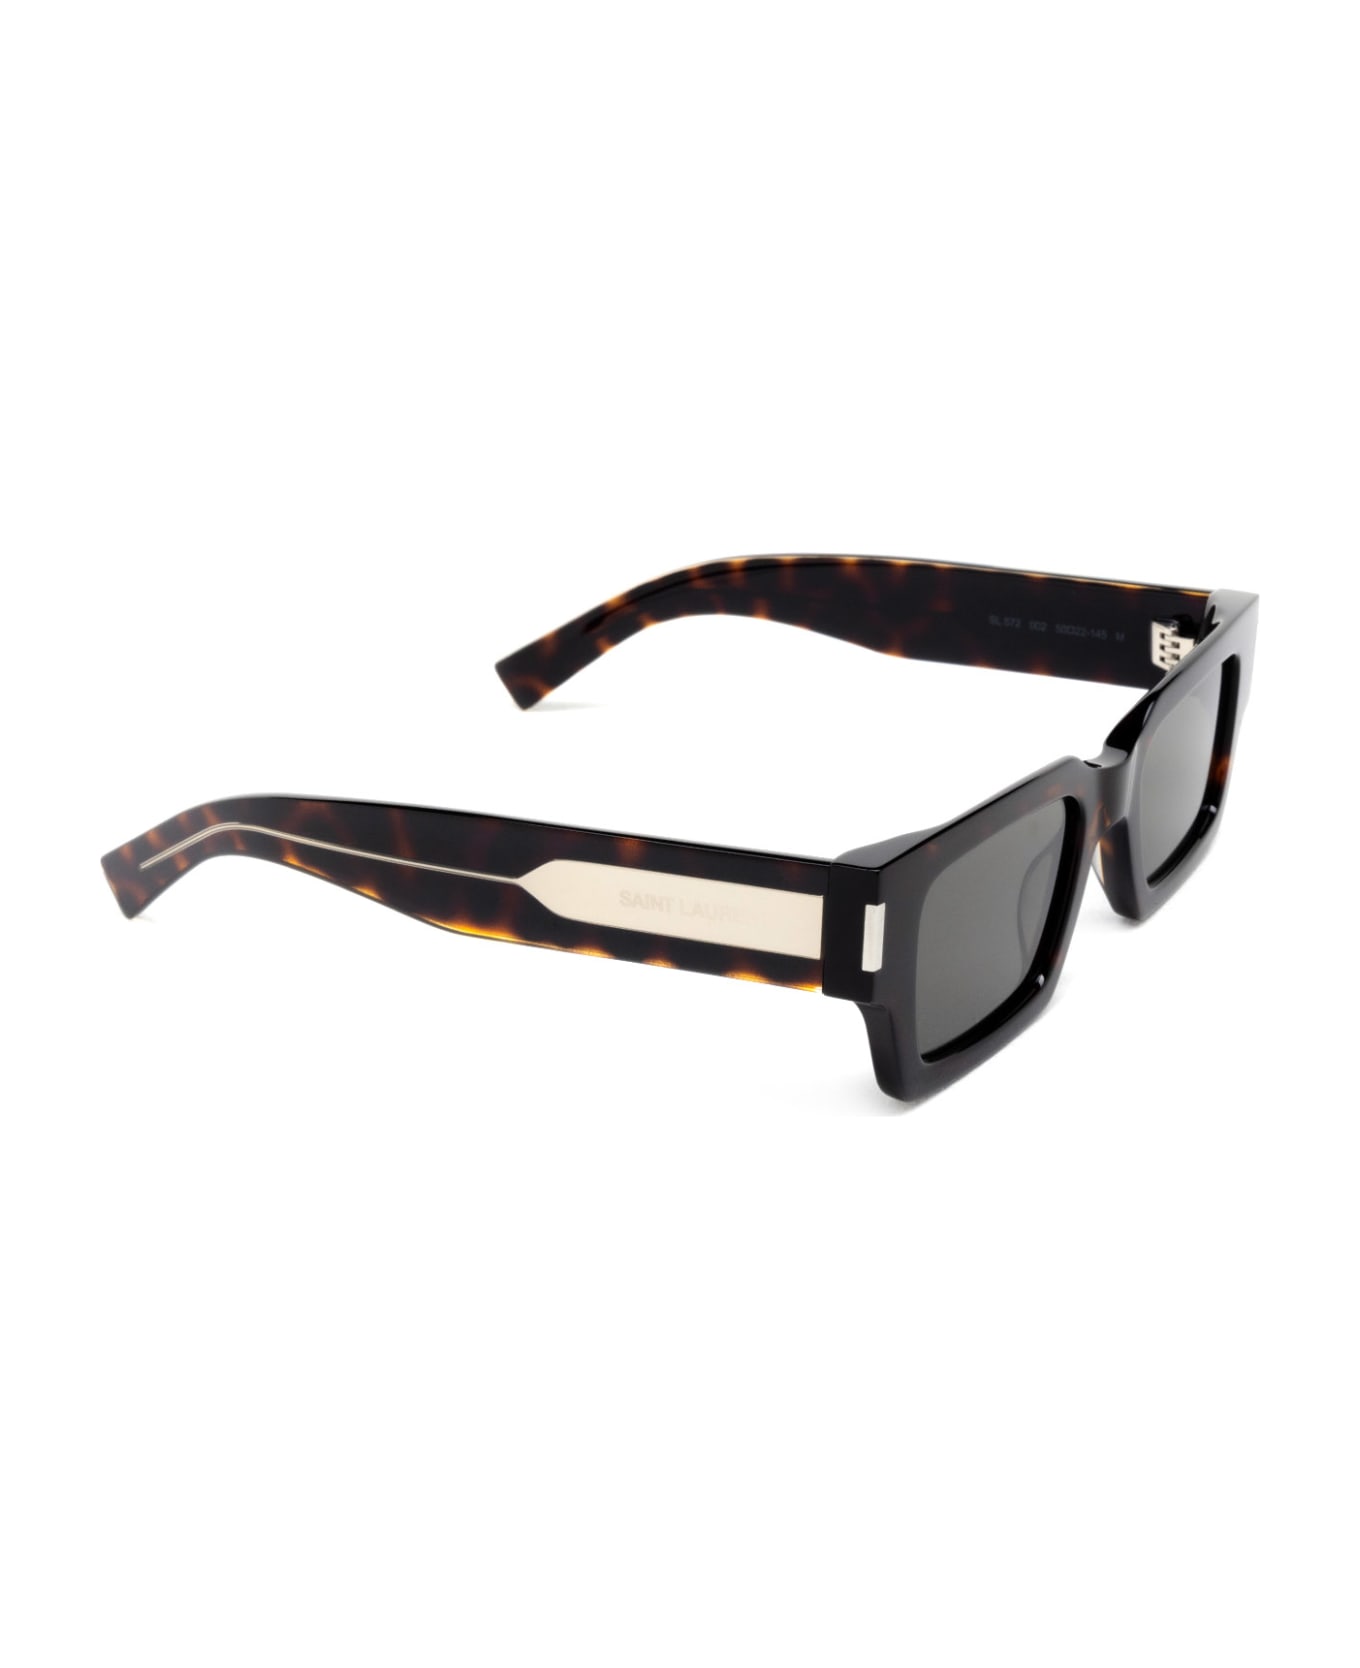 Saint Laurent Eyewear Sl 572 Havana Sunglasses - Havana